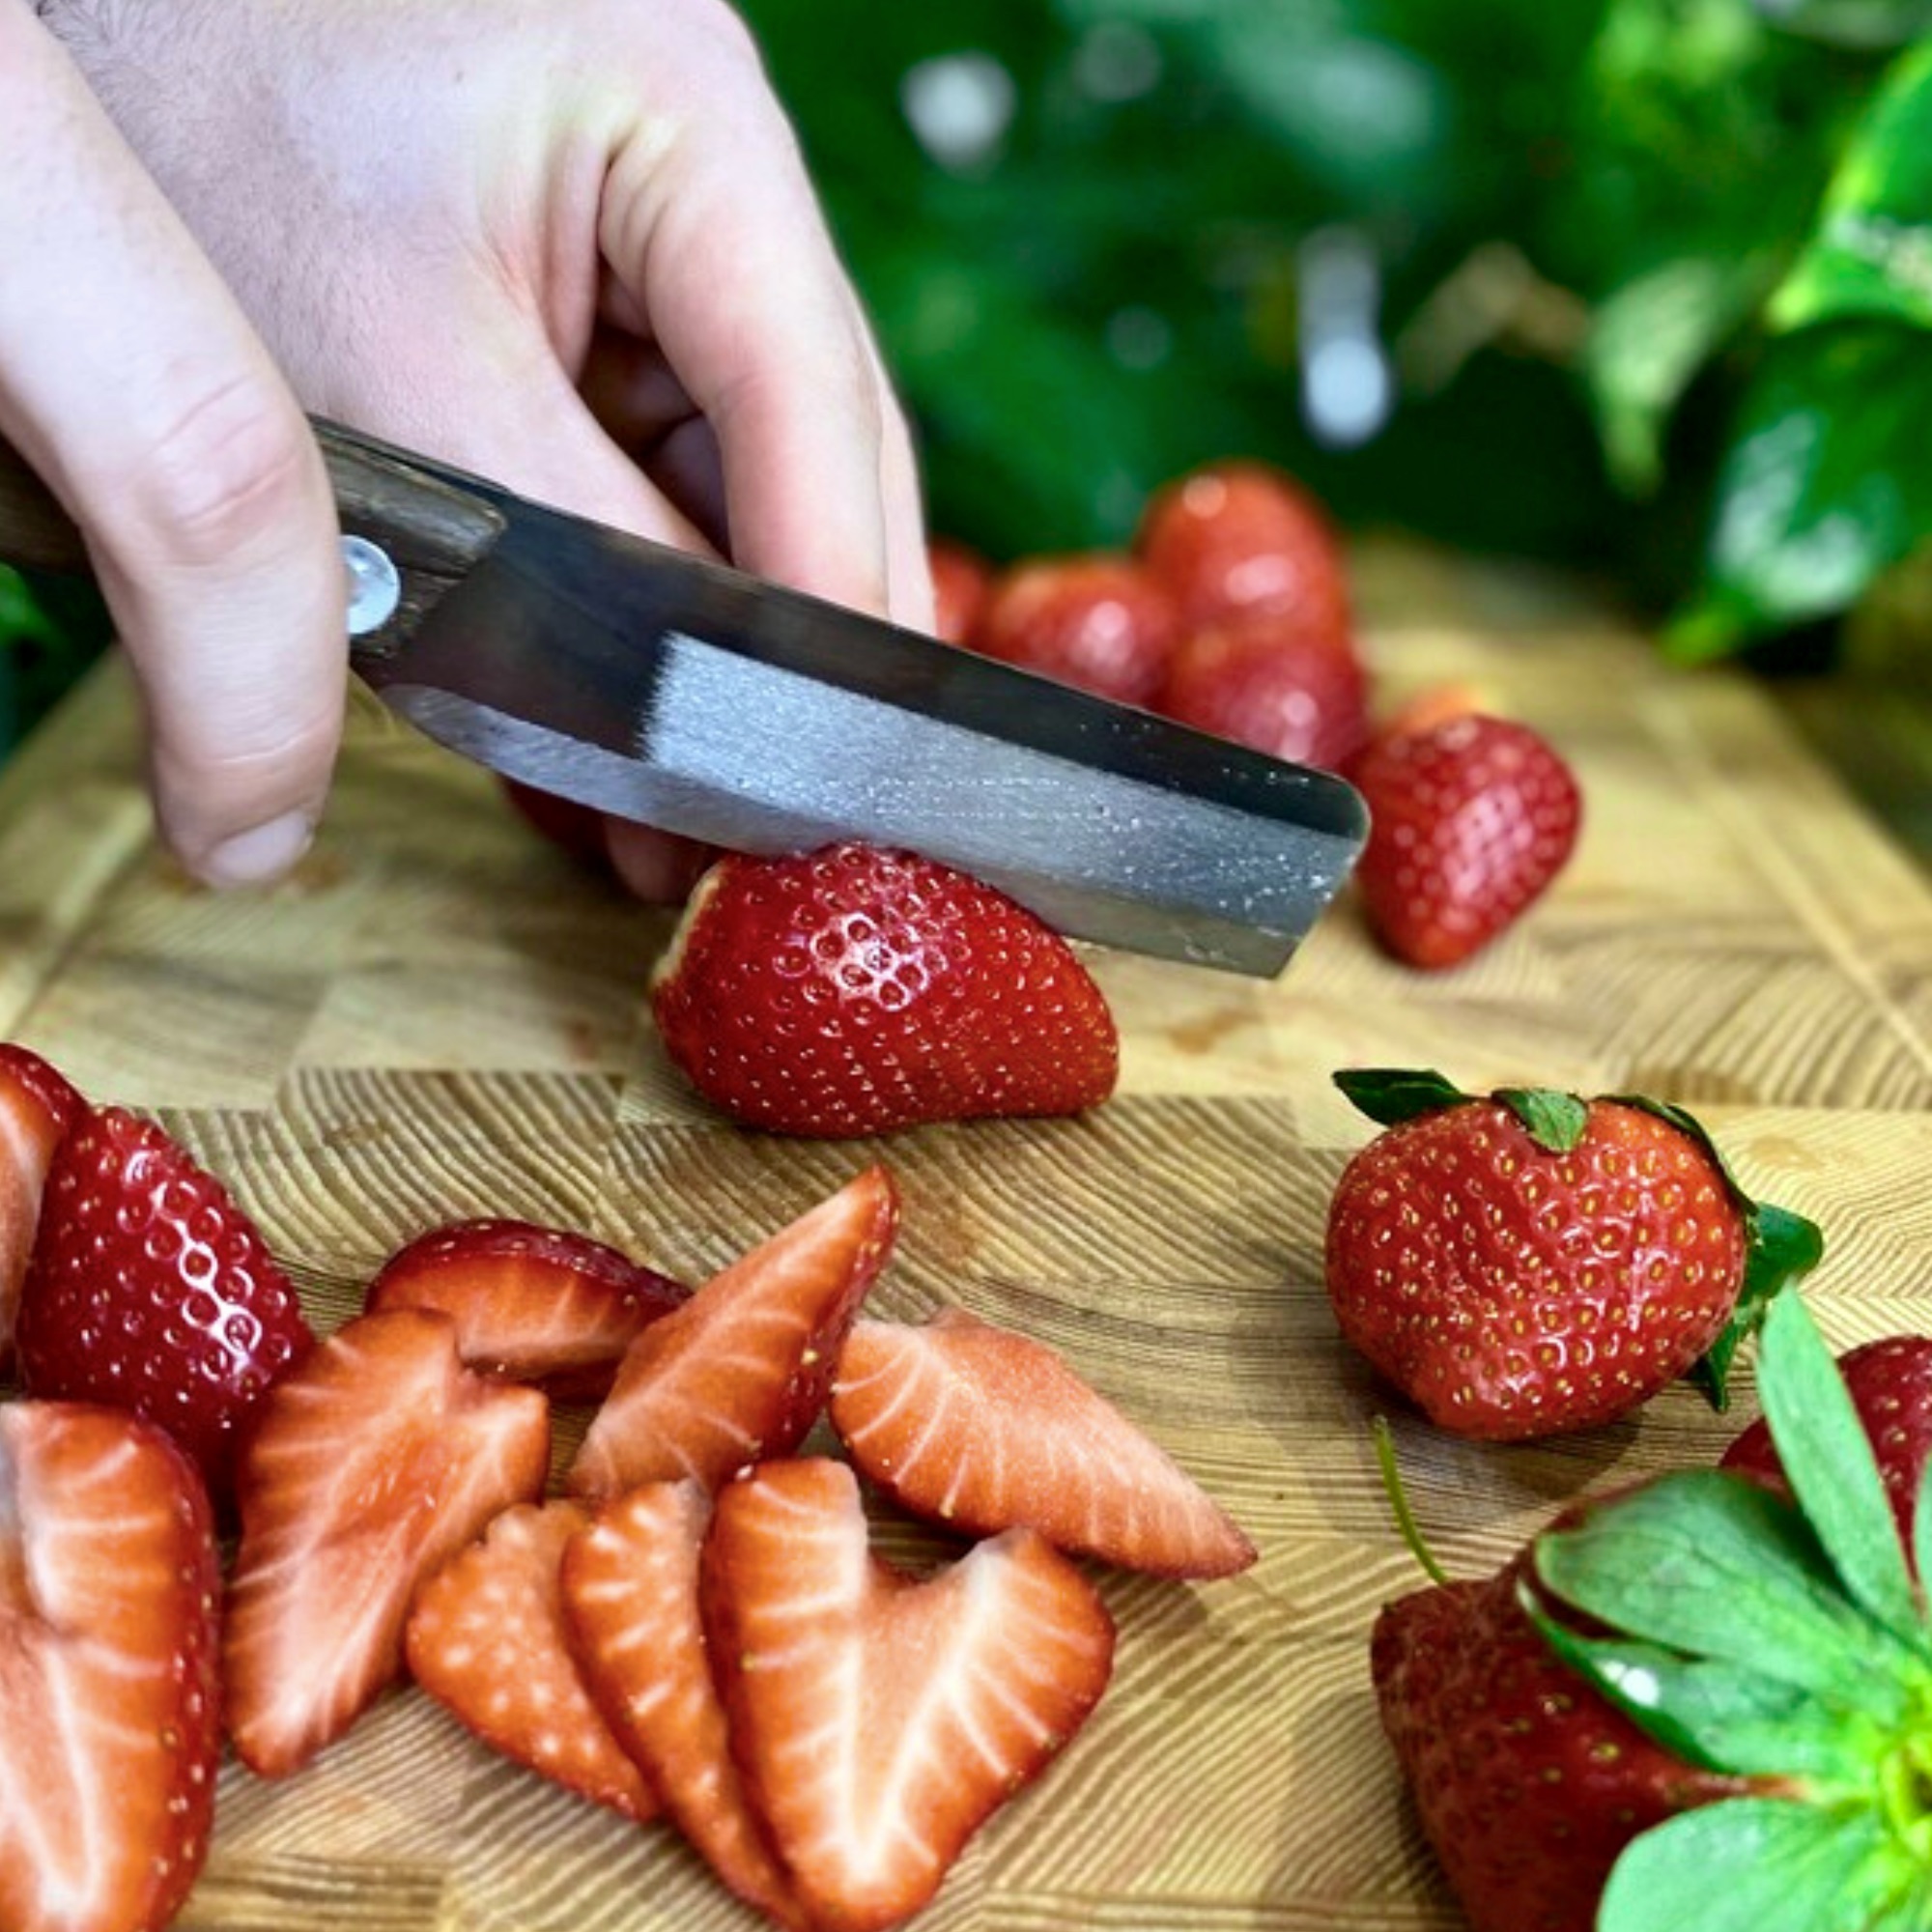 🍓❤️ Es ist endlich wieder Erdbeerzeit! Wer liebt diese saftigen, roten Früchte nicht? 😍 Aber bevor wir uns in köstliche Erdbeerrezepte stürzen, lass uns über die richtige Art und Weise sprechen, Erdbeeren zu schneiden. 🤔💭

Hier sind ein paar Tipps für die perfekte Verarbeitung von Erdbeeren:
1️⃣ Verwende scharfe Klingen für präzises Schneiden. Mit unseren vietnamesischen Messern von AUTHENTIC BLADES  wird das Schneiden zum Kinderspiel – ganz ohne die Beere zu zerdrücken. 🔪✨
2️⃣ Entferne den Strunk vorsichtig, indem du mit einem kleinen Messer einen kreisförmigen Schnitt um ihn herum machst. Perfekt eignen sich hierfür unsere Messer VAY oder TAU LON.
3️⃣ Damit die Beeren gut saften, schneide sie in gleichmäßige Scheiben. So erreichst du eine schöne Präsentation in deinen Gerichten und erhältst zusätzlich den leckeren Saft.

Jetzt bist du dran! Teile deine Lieblings-Erdbeerrezepte in den Kommentaren mit uns. 🍓💬 

#erdbeerzeit #erdbeeren #erdbeere #erdbeerliebe #erdbeerrezepte #authenticblades #rezeptideen